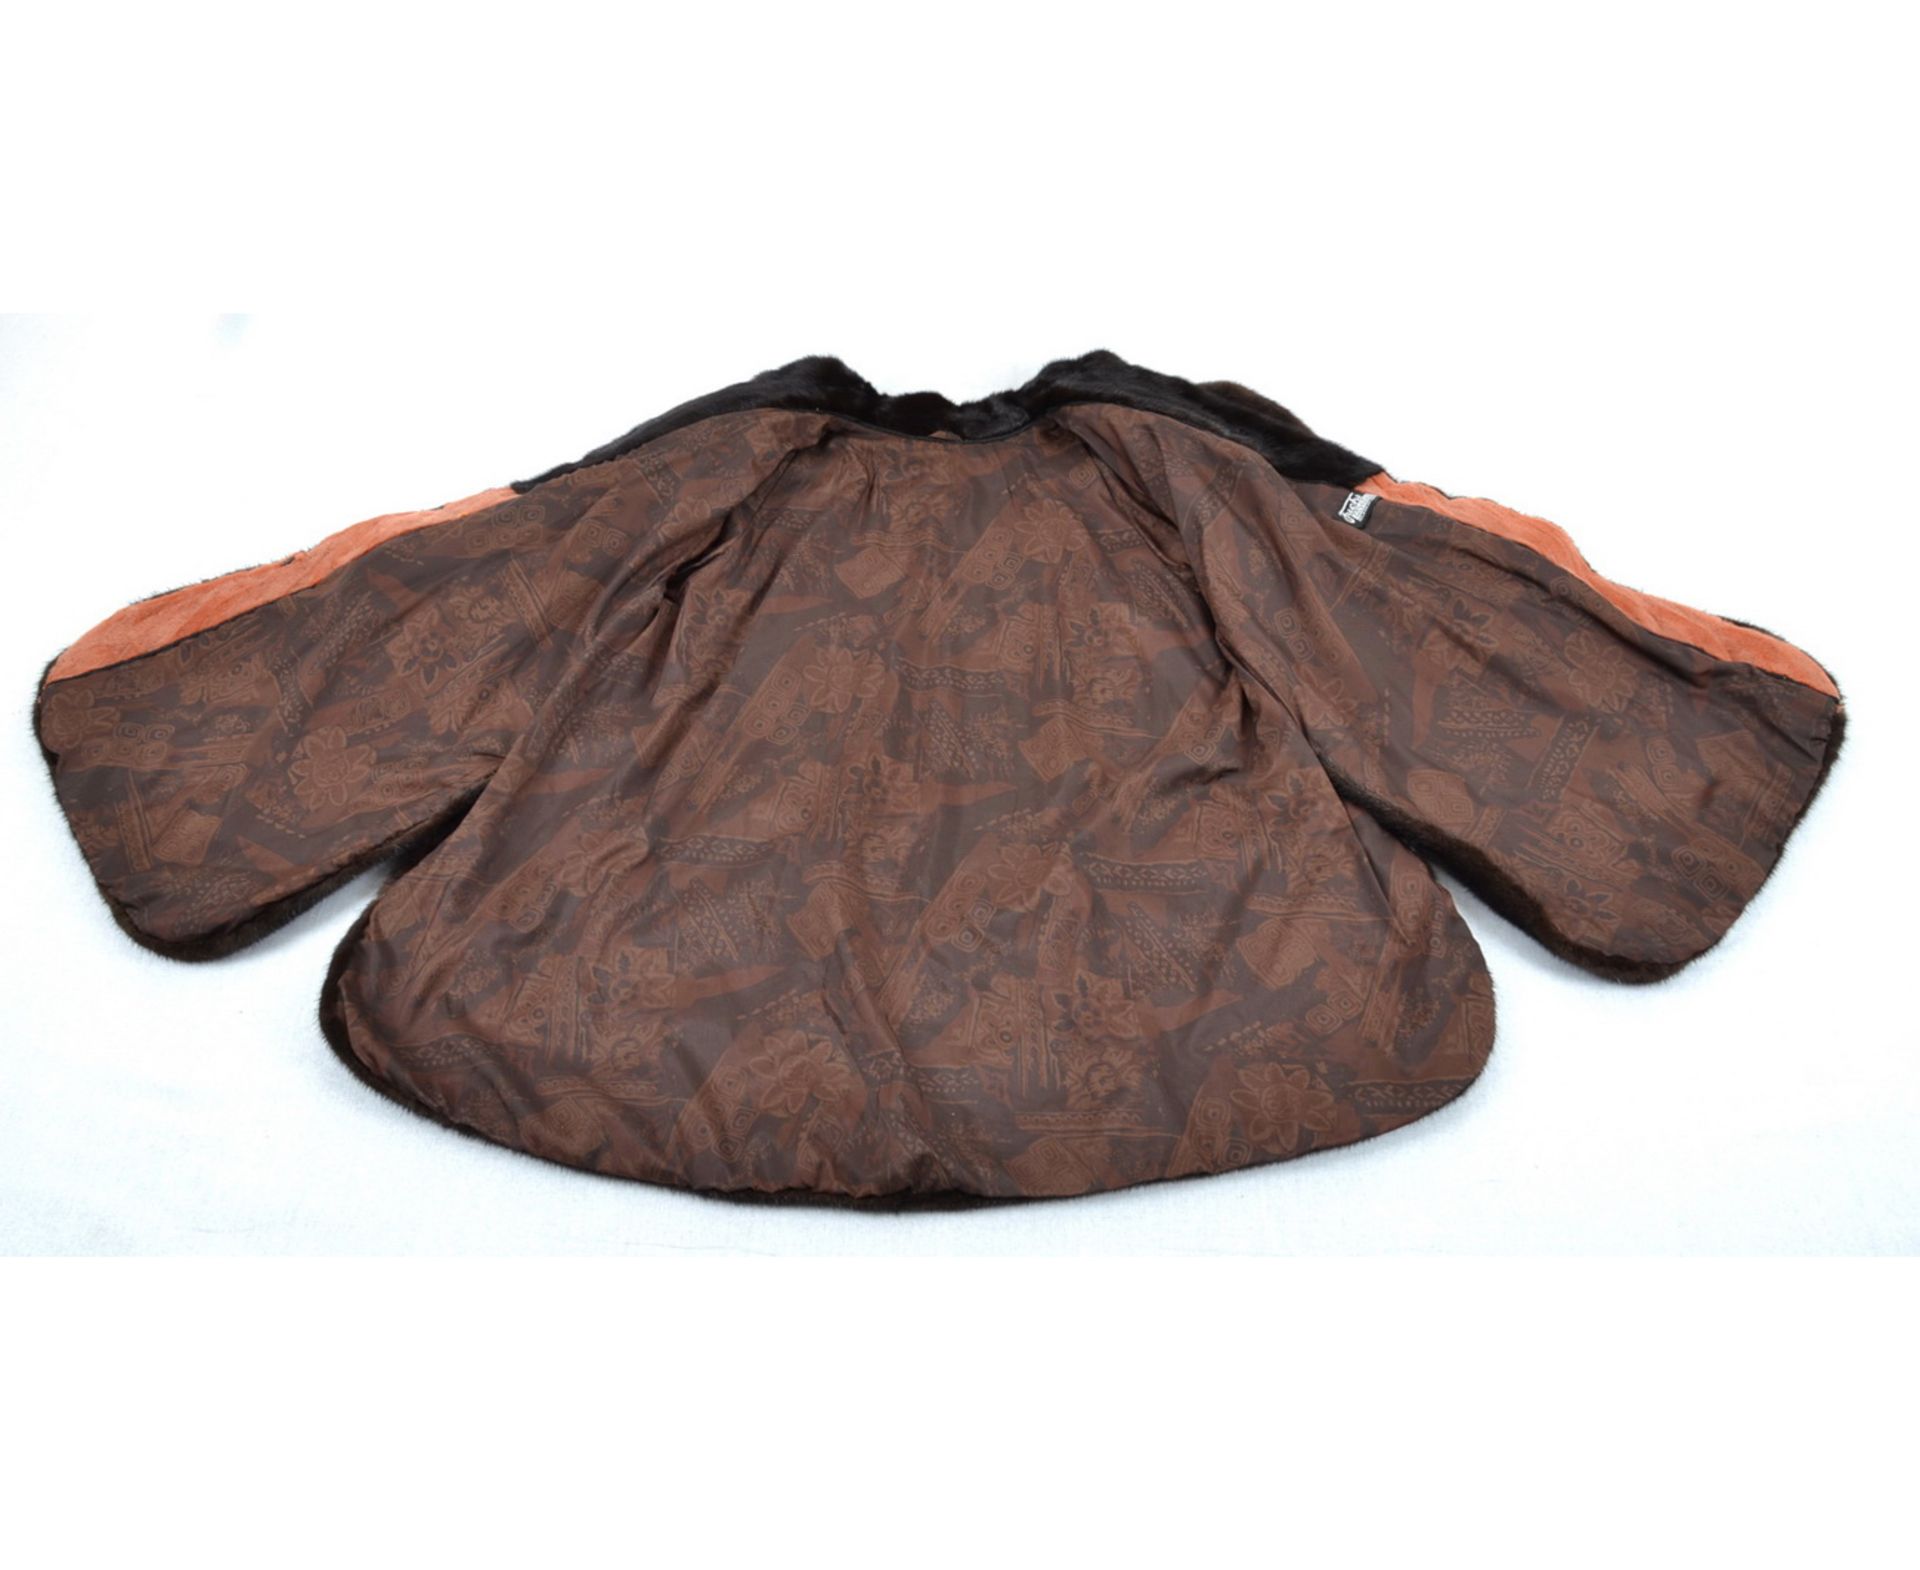 Nerzjacke Lachs farbig mit dunkel braunen Nerz Gr.46/48, mink jacket salmon colored with dark brown - Image 10 of 10